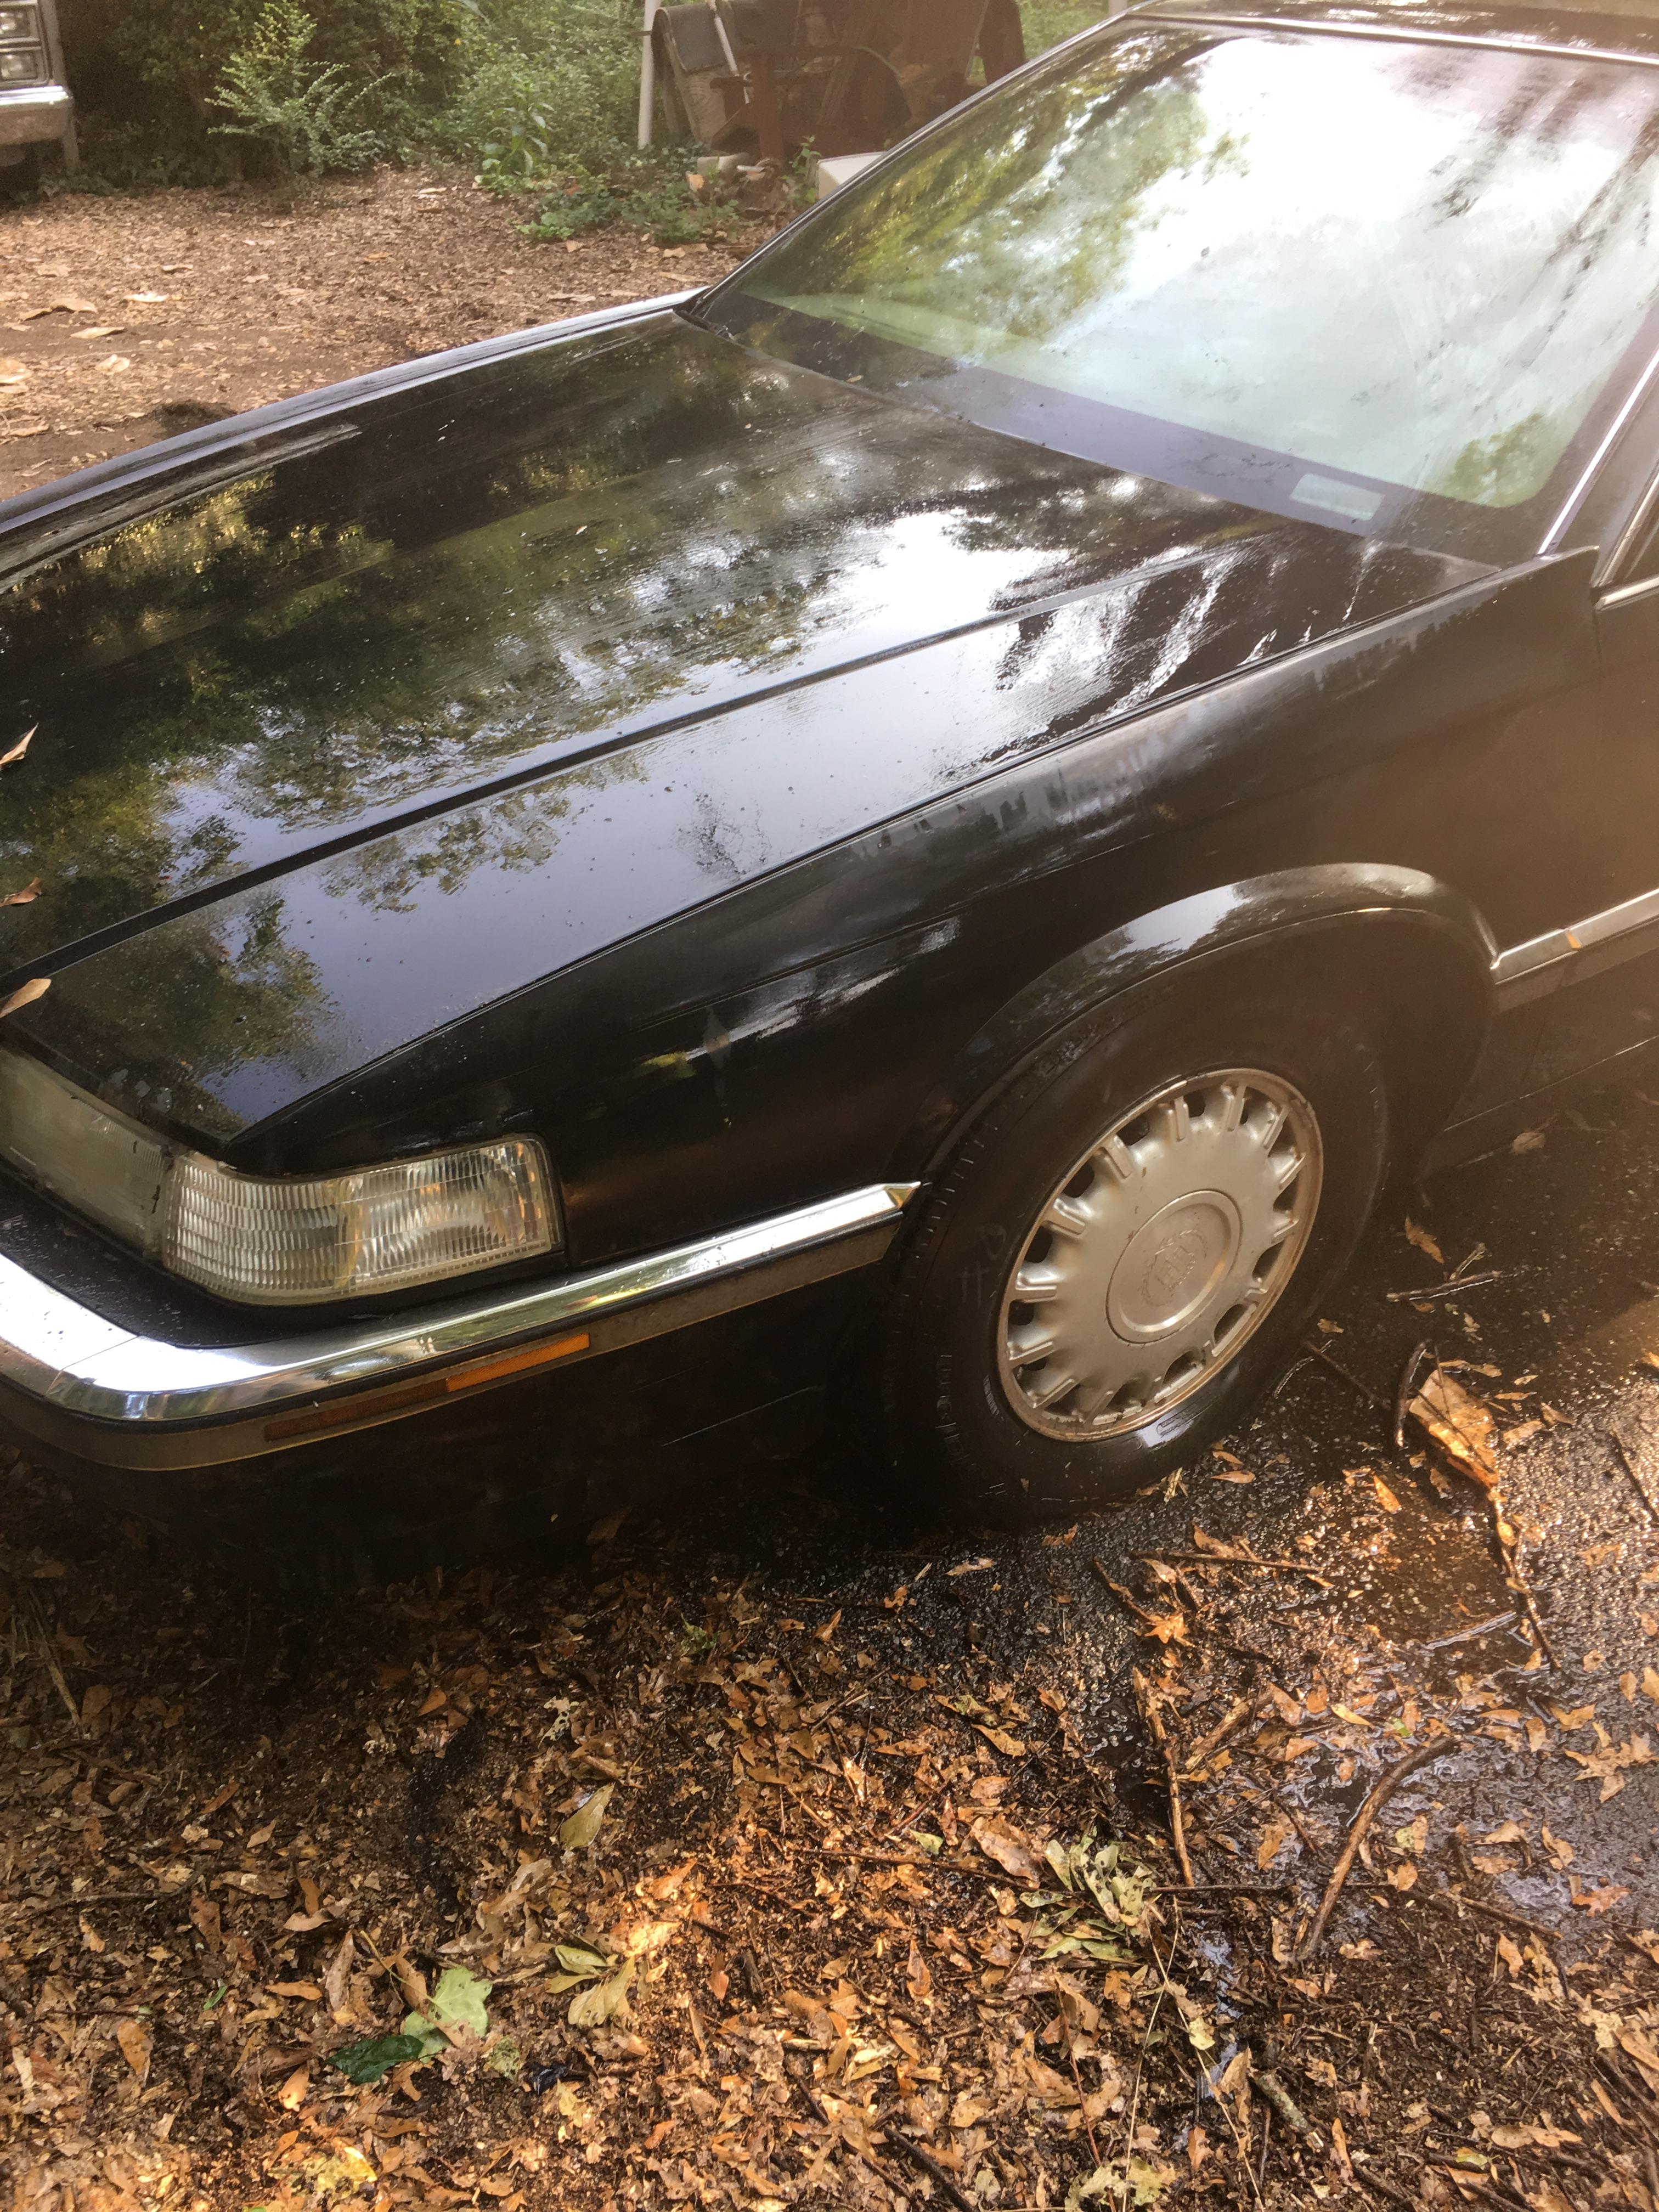 1993 Cadillac El Dorado/V8/171,310 Miles (Will Have To Be Towed Off Premises)